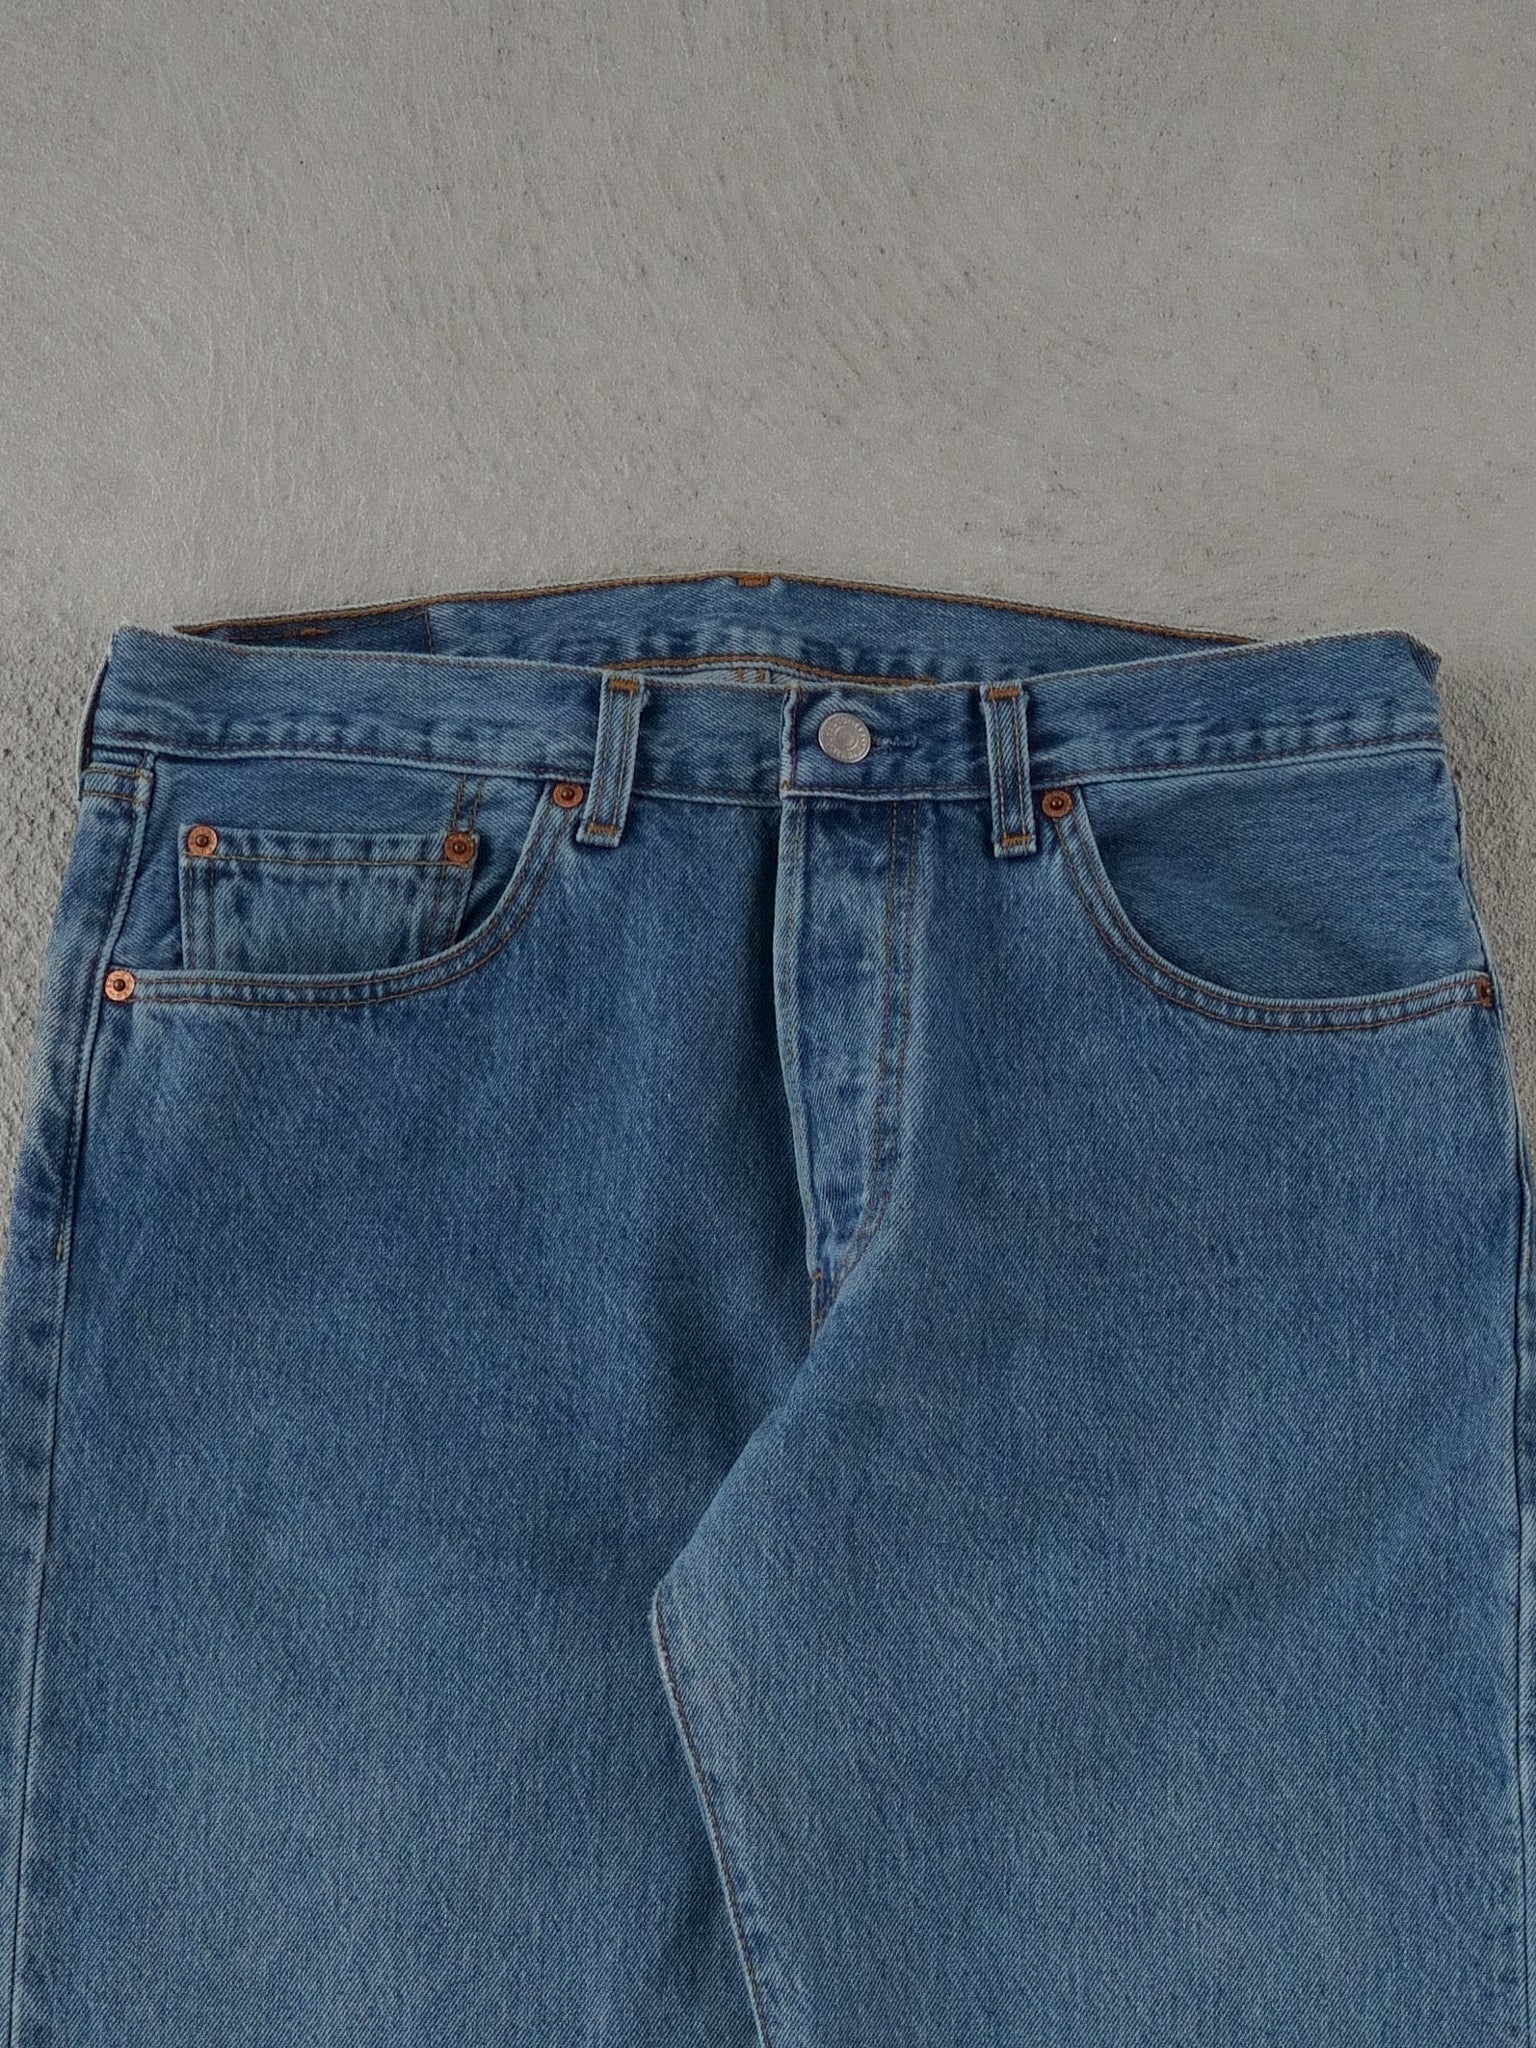 Vintage 90s Blue Levi's 501 Denim Jeans (32x34)